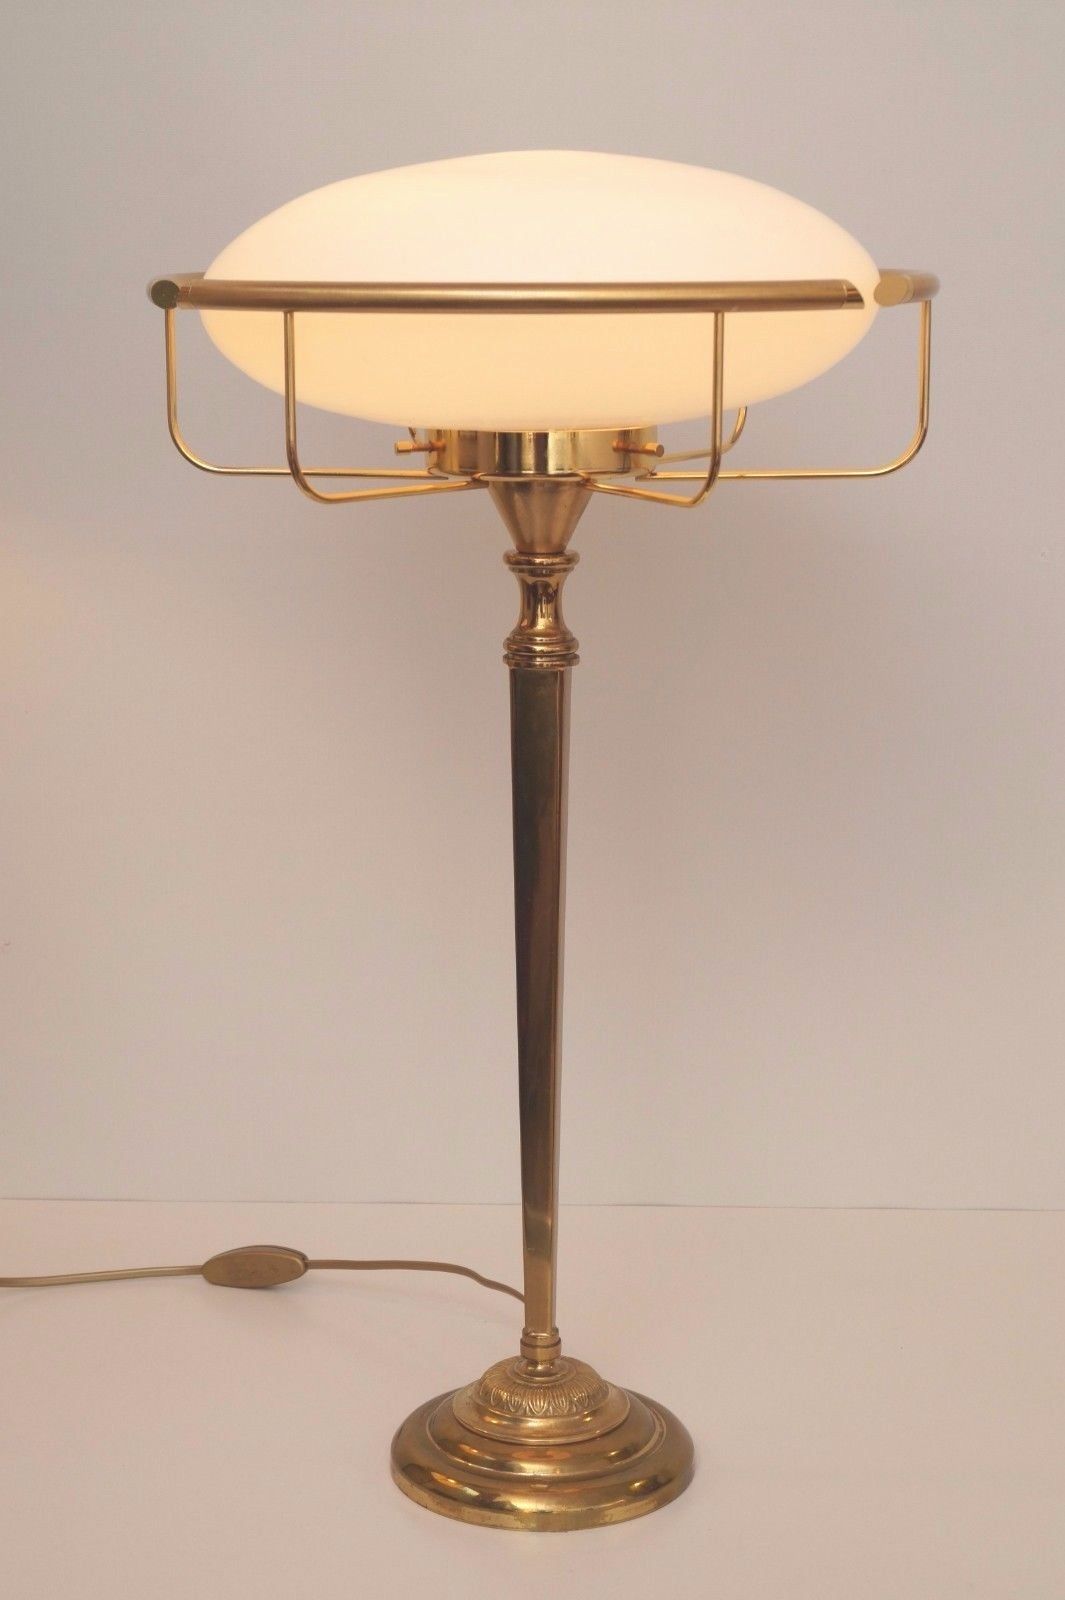 Quaranteed Unique Art Deco Table lamp "THE SEATTLE UFO" Brass Desk